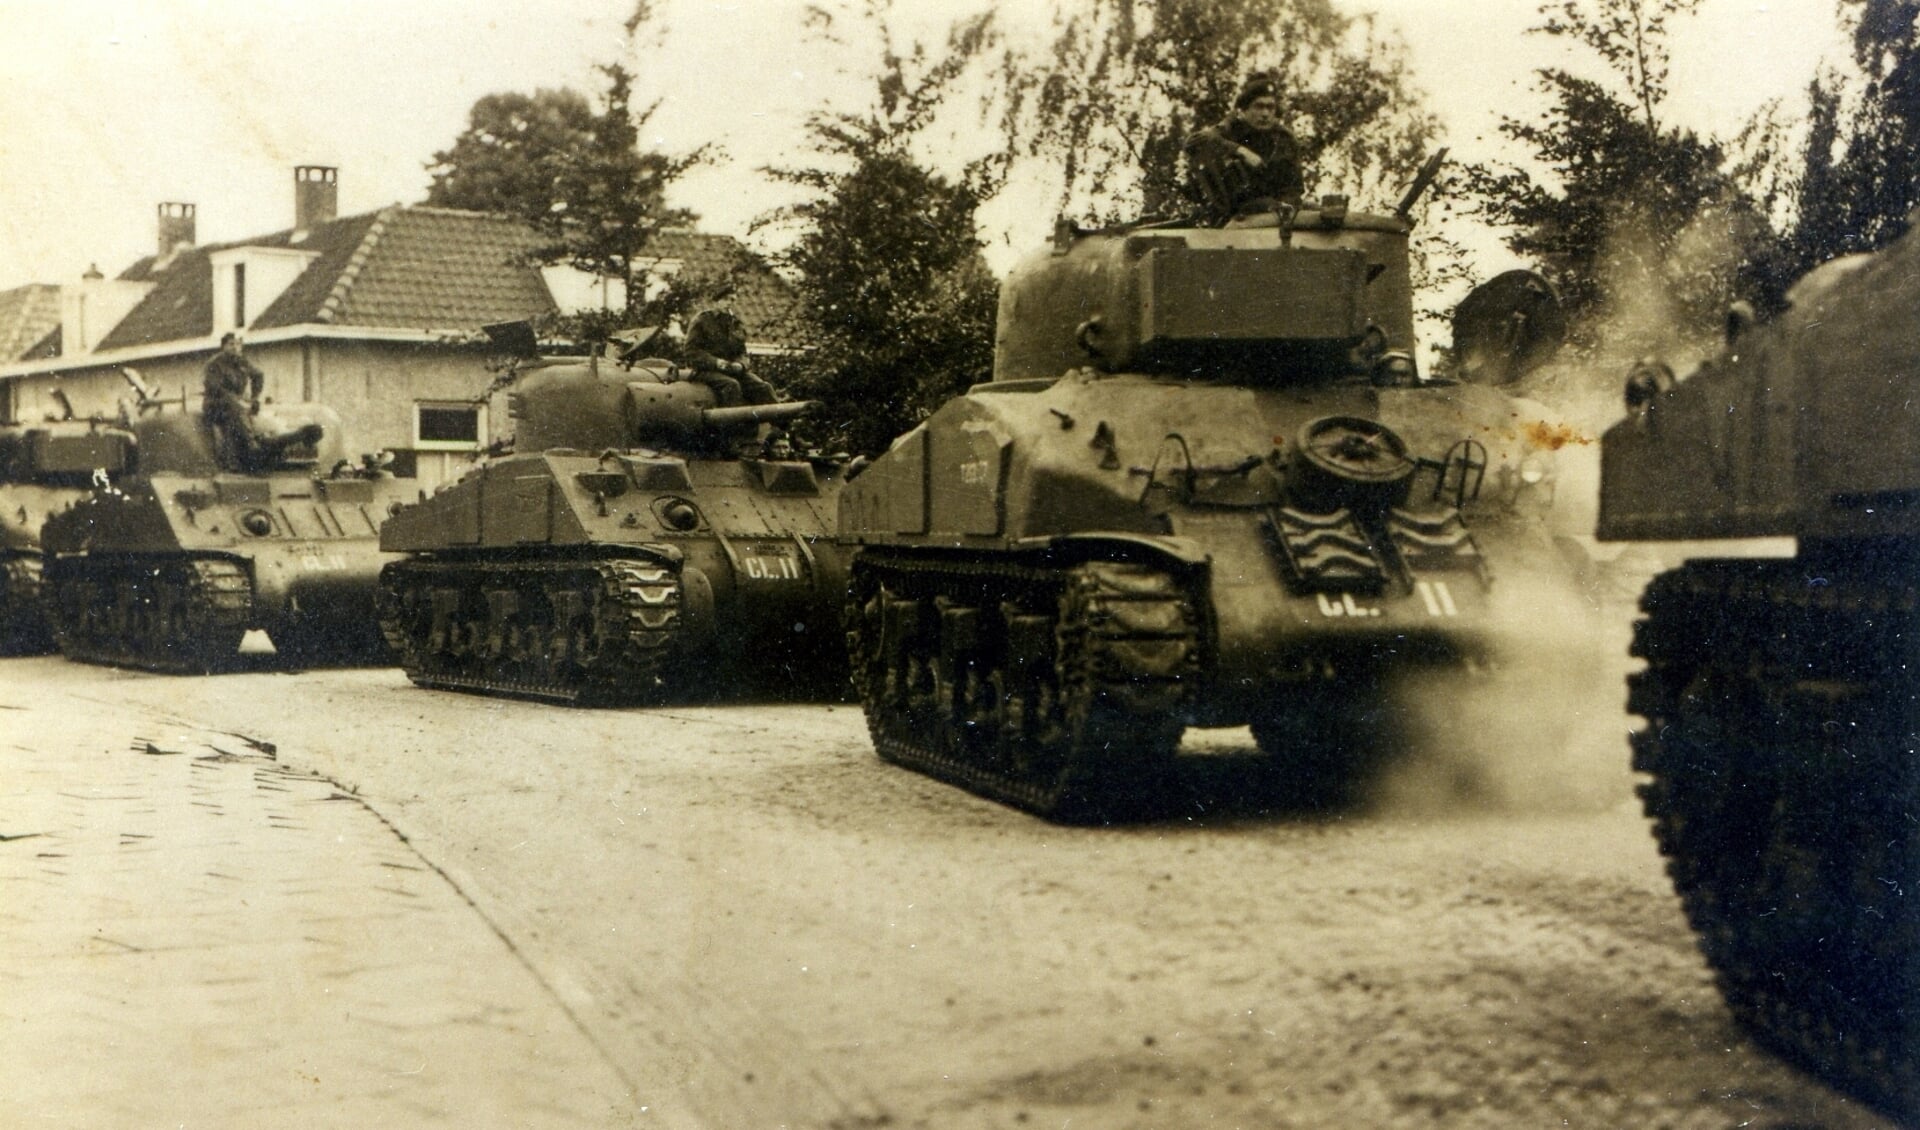 Grote aantallen tanks kwamen vanaf Het Hoge via de Raadhuisstraat het dorp binnen. Het kruispunt werd volledig omgewoeld door de haakse bewegingen van de tanks .Foto: Oud Vorden.